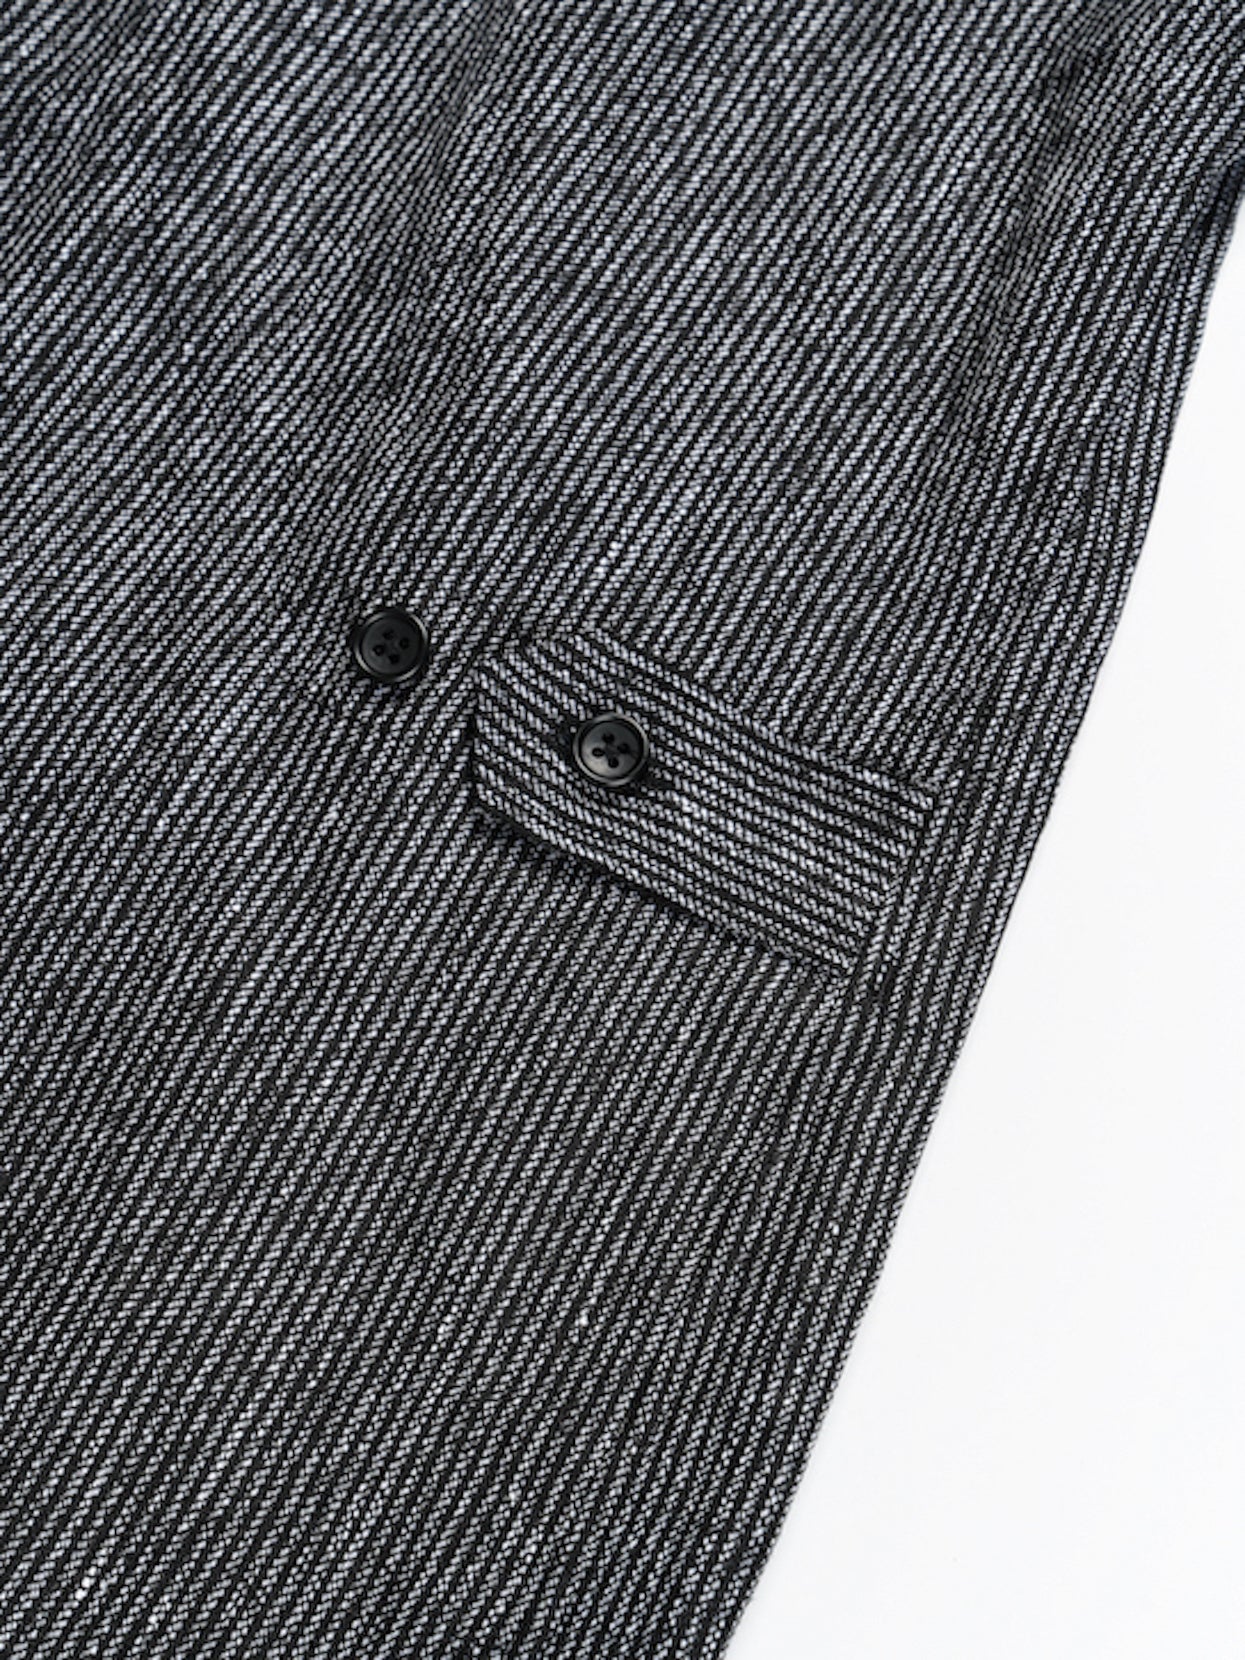 Loiter Jacket - Black / Grey Linen Stripe